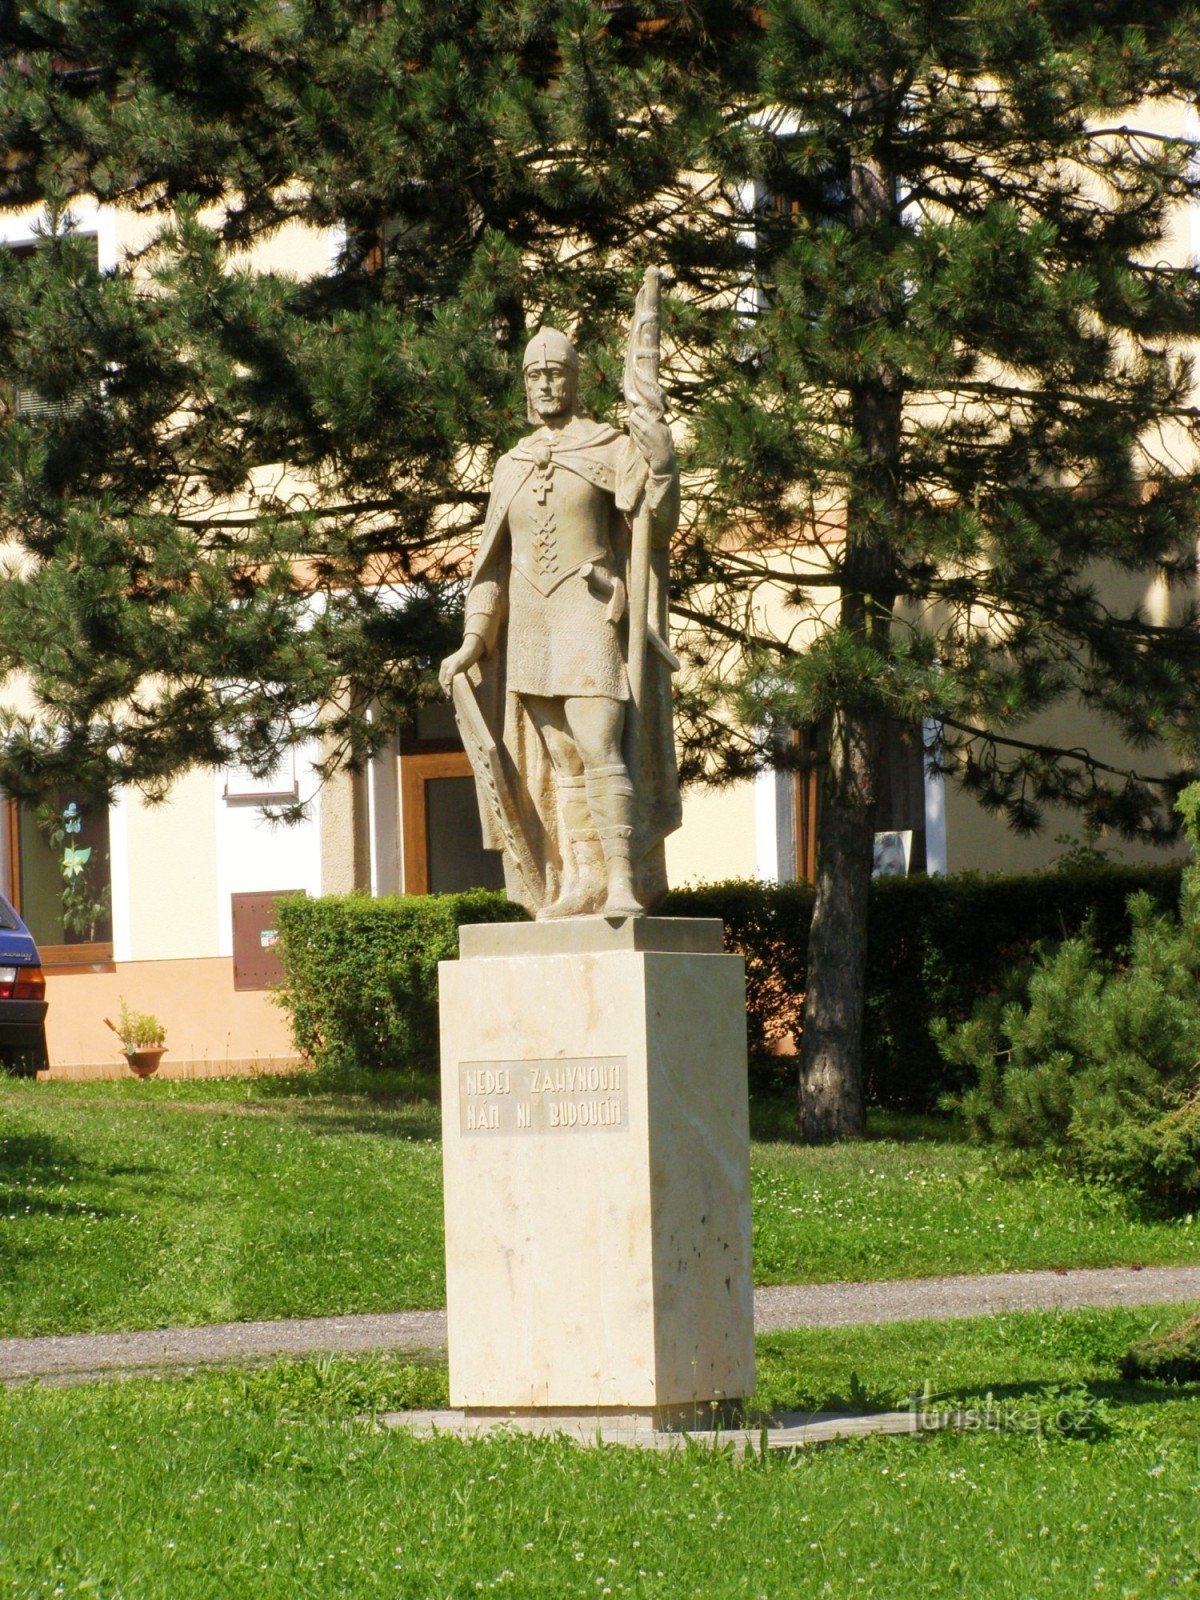 Mlázovice - náměstí Na Trávníku, St. Venceslau